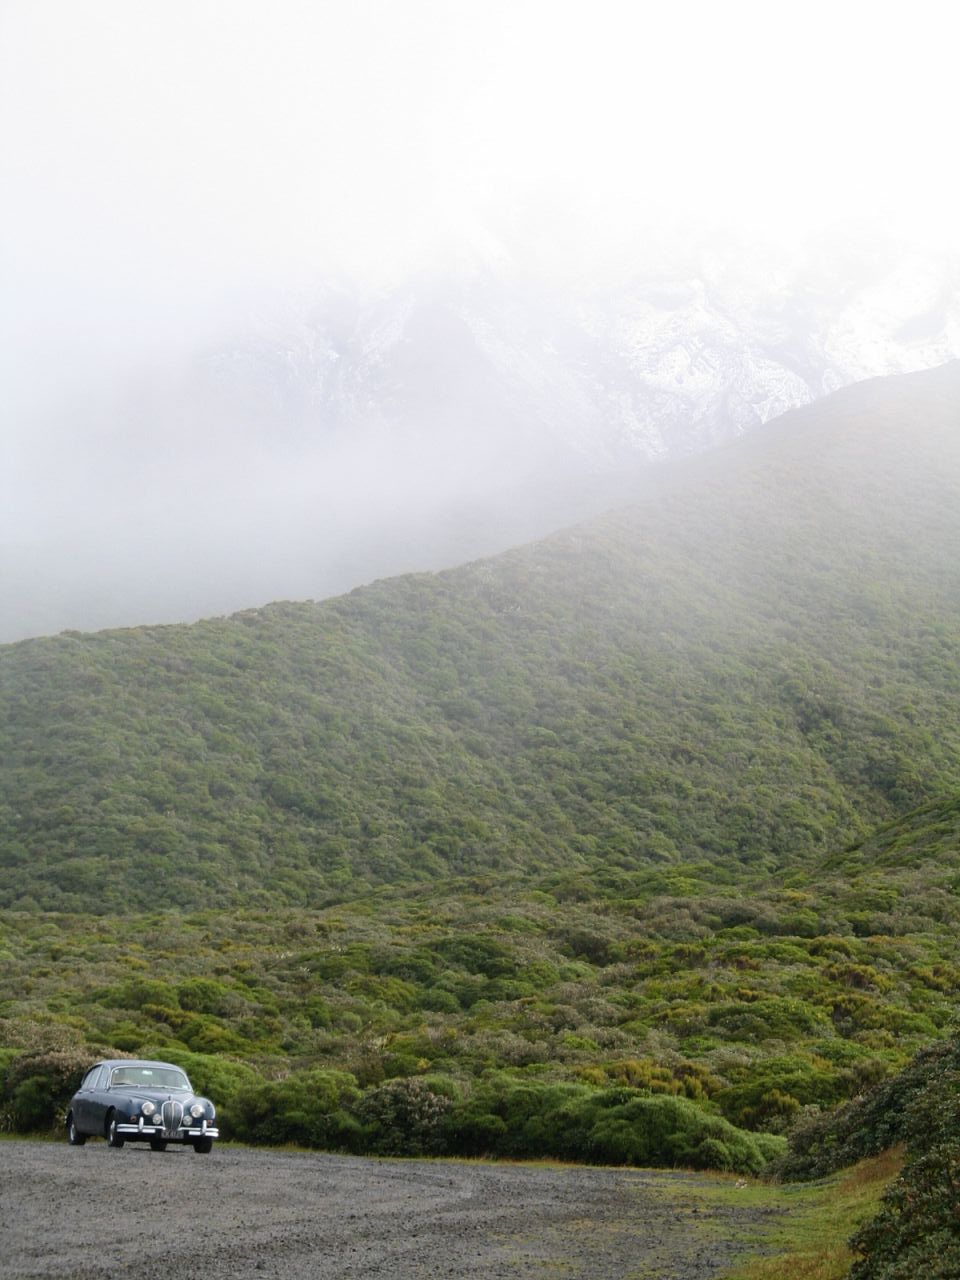 fotka / image parkovite v plce cesty na vrchol Mt. Taranaki, New Zealand, kolekce E